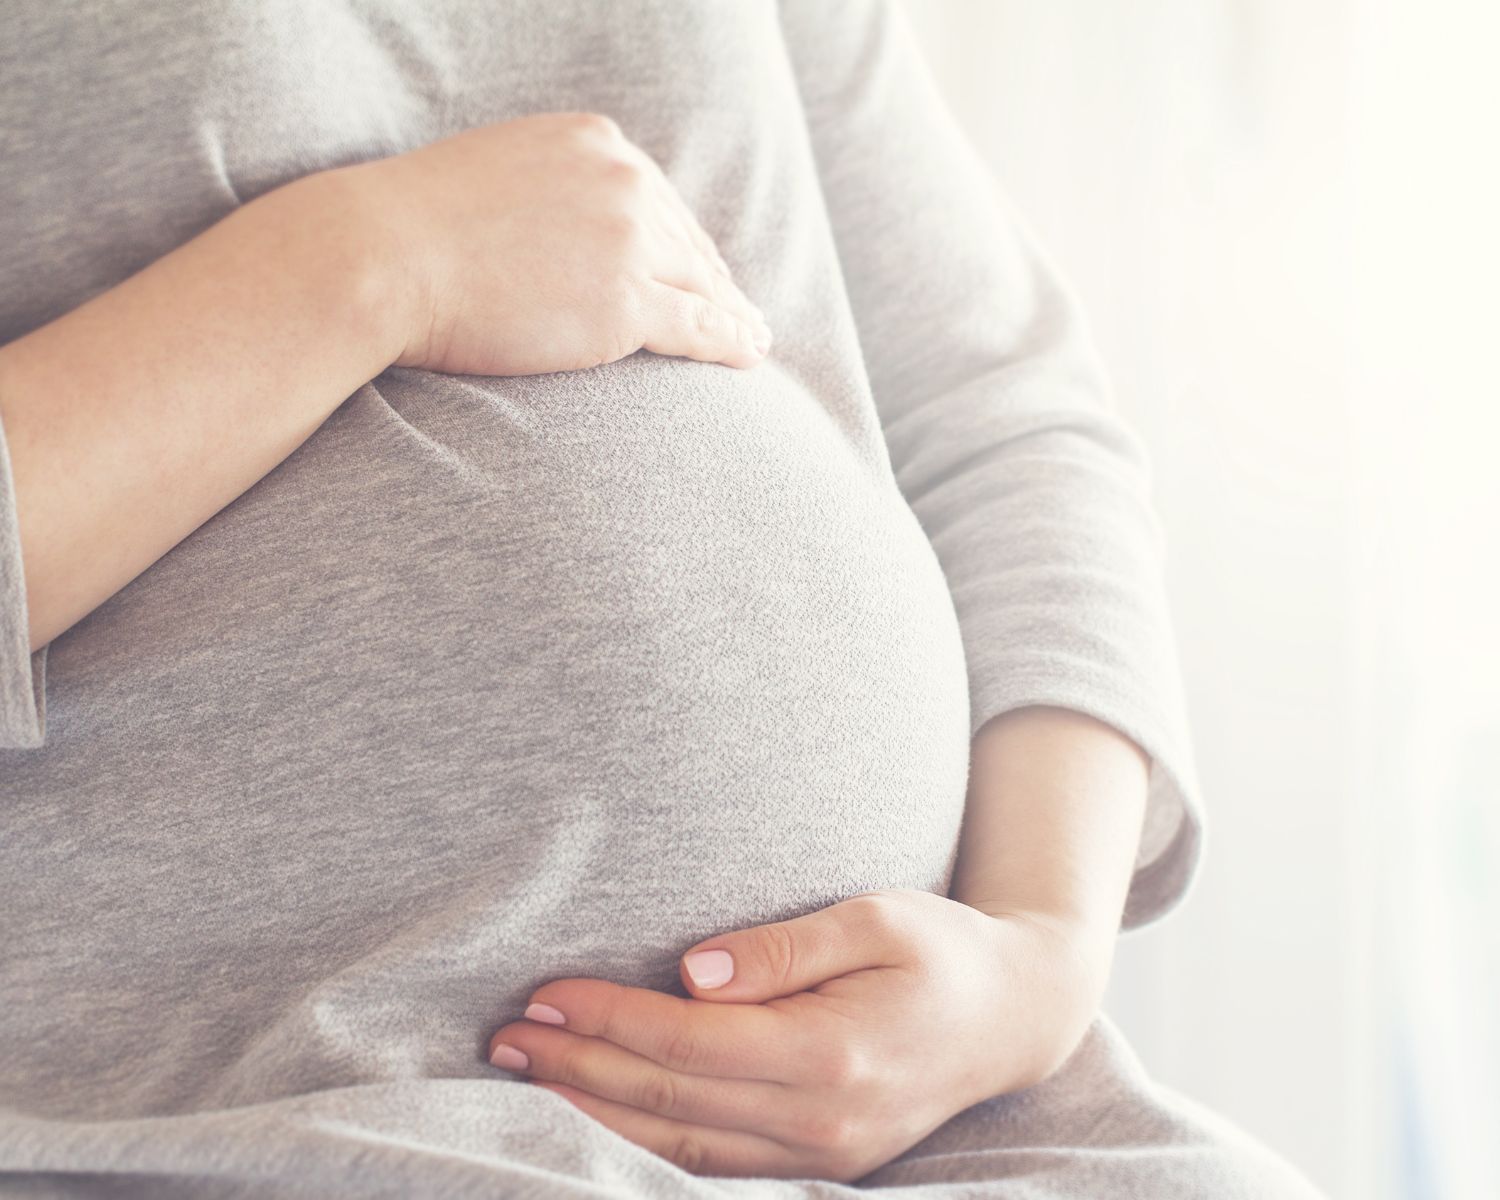 تفسير حلم حركة الجنين القوية للحامل